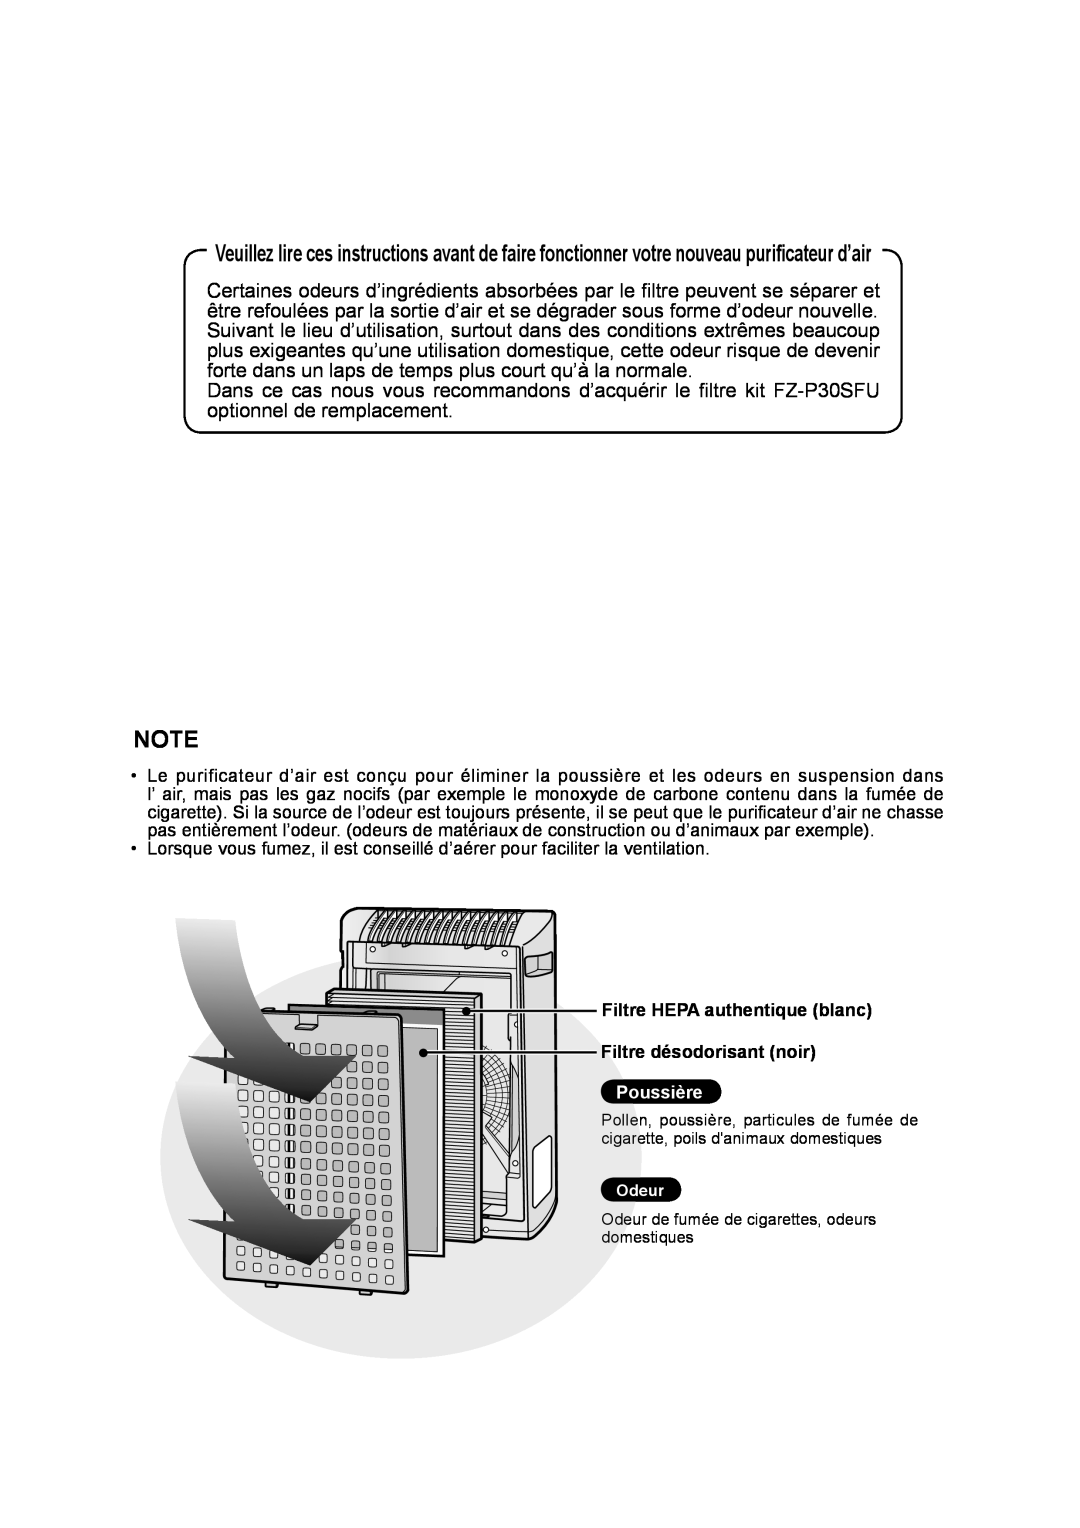 Sharp FP-P30U operation manual Filtre HEPA authentique blanc, Filtre désodorisant noir, Poussière 